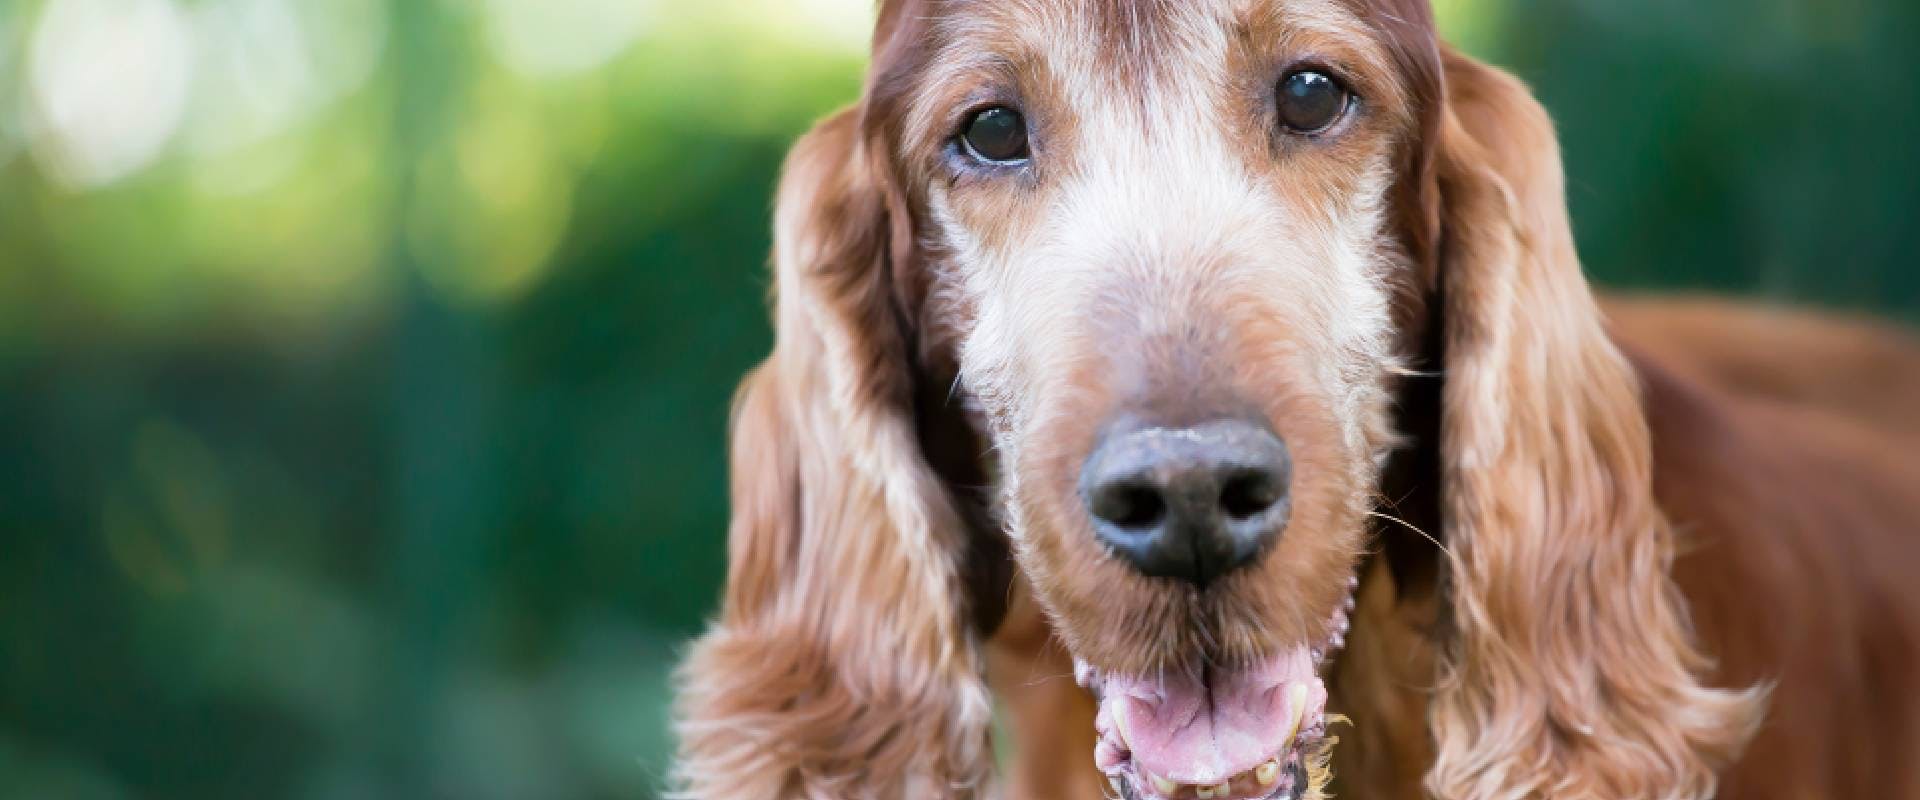 Close-up of a senior Spaniel dog